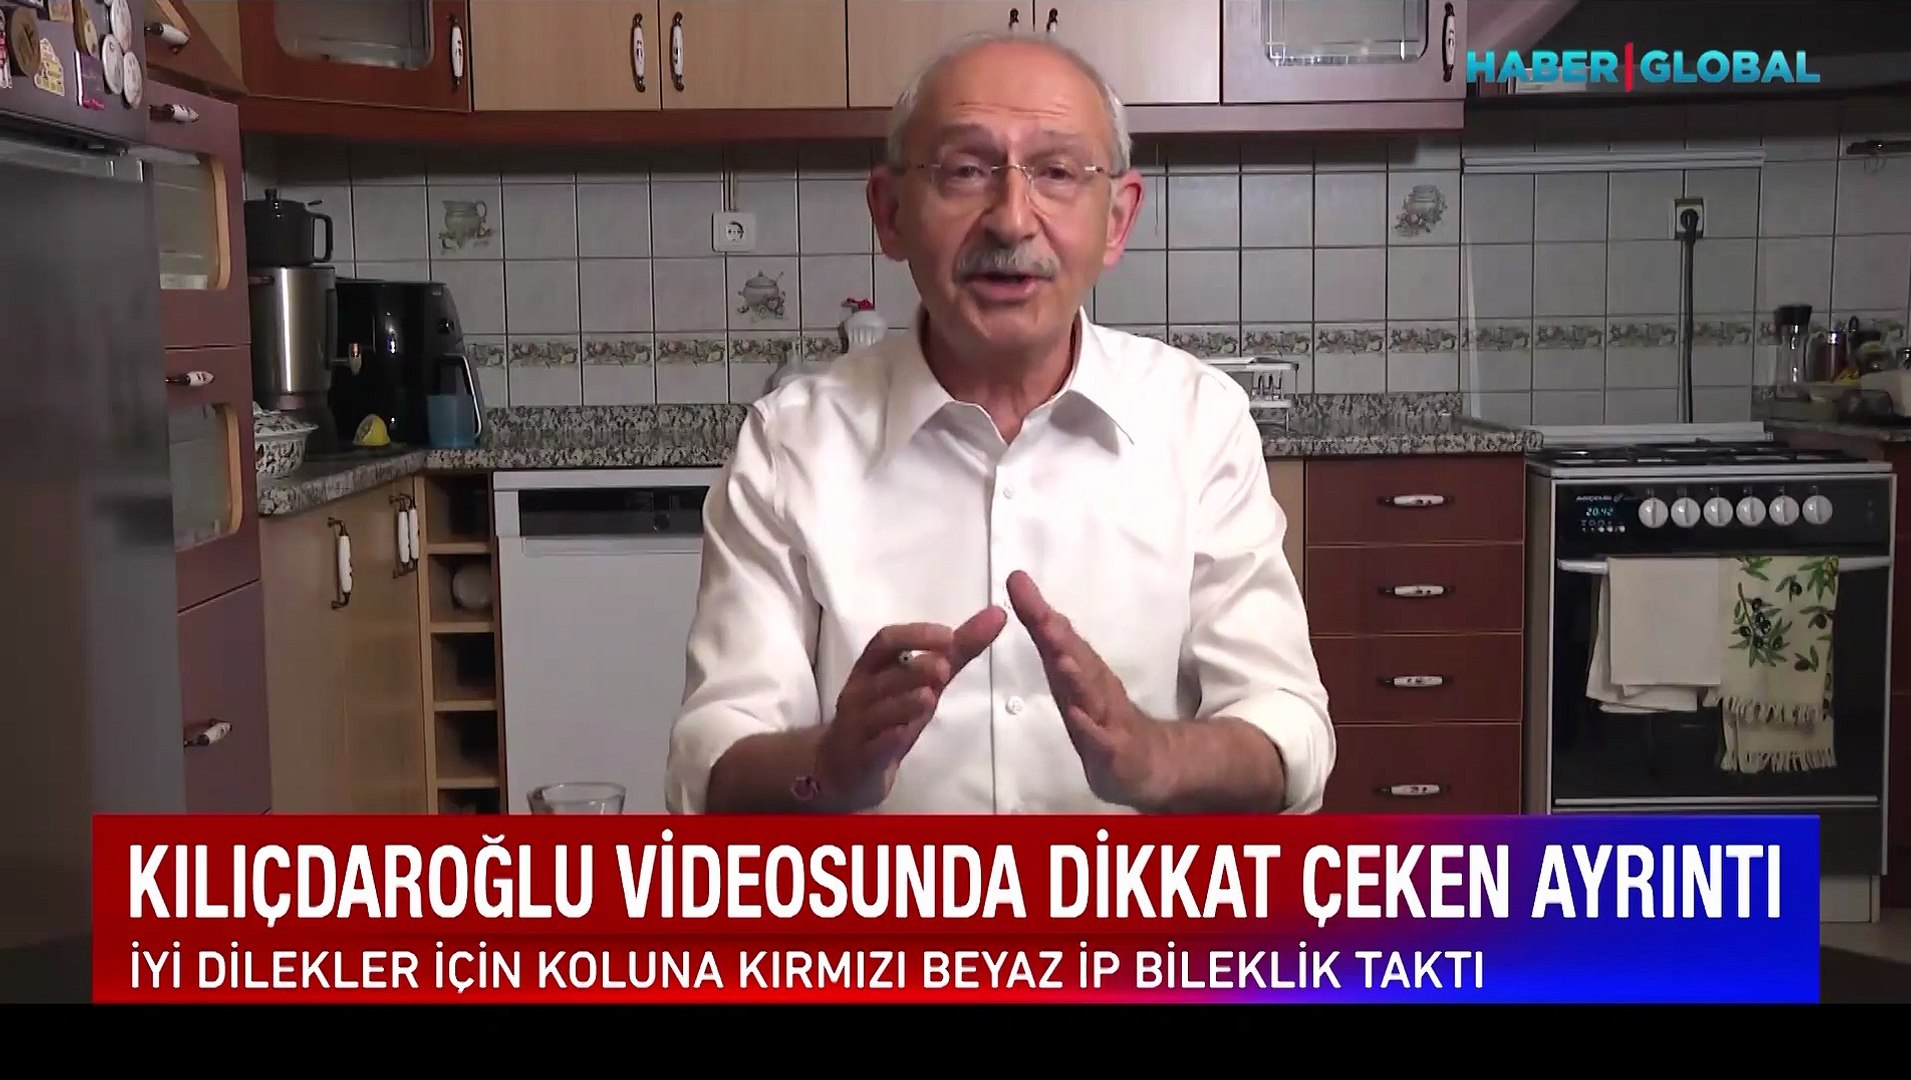 Kılıçdaroğlu videosunda dikkat çeken ayrıntı - Dailymotion Video